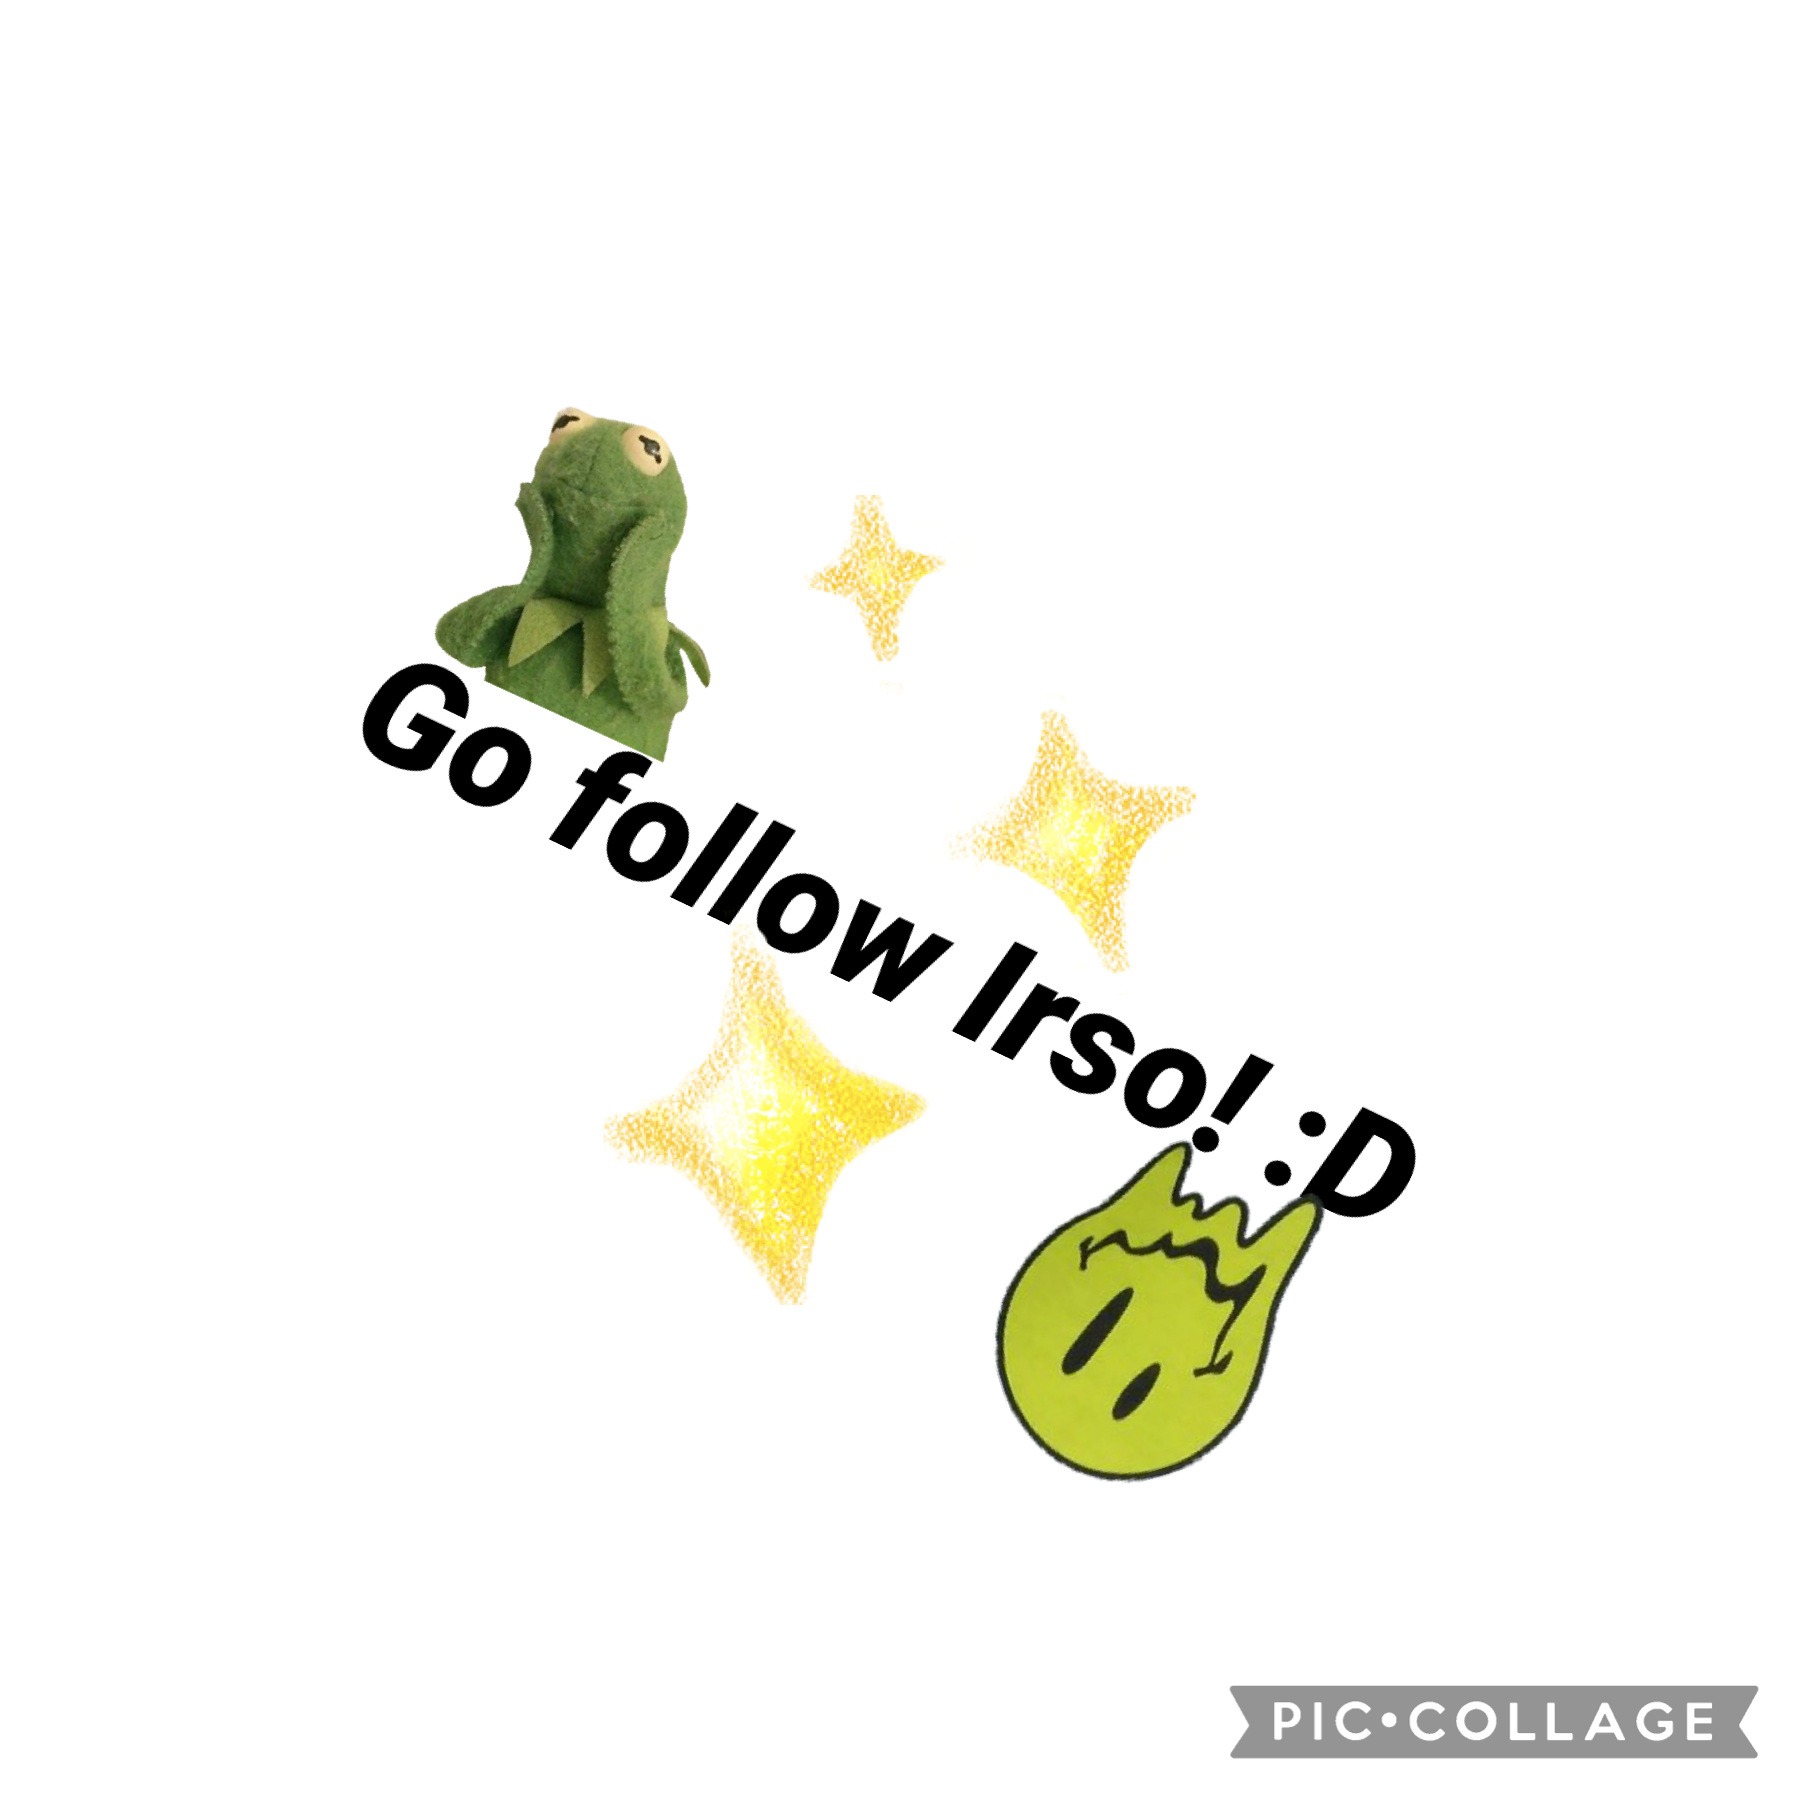 Go follow Irso!